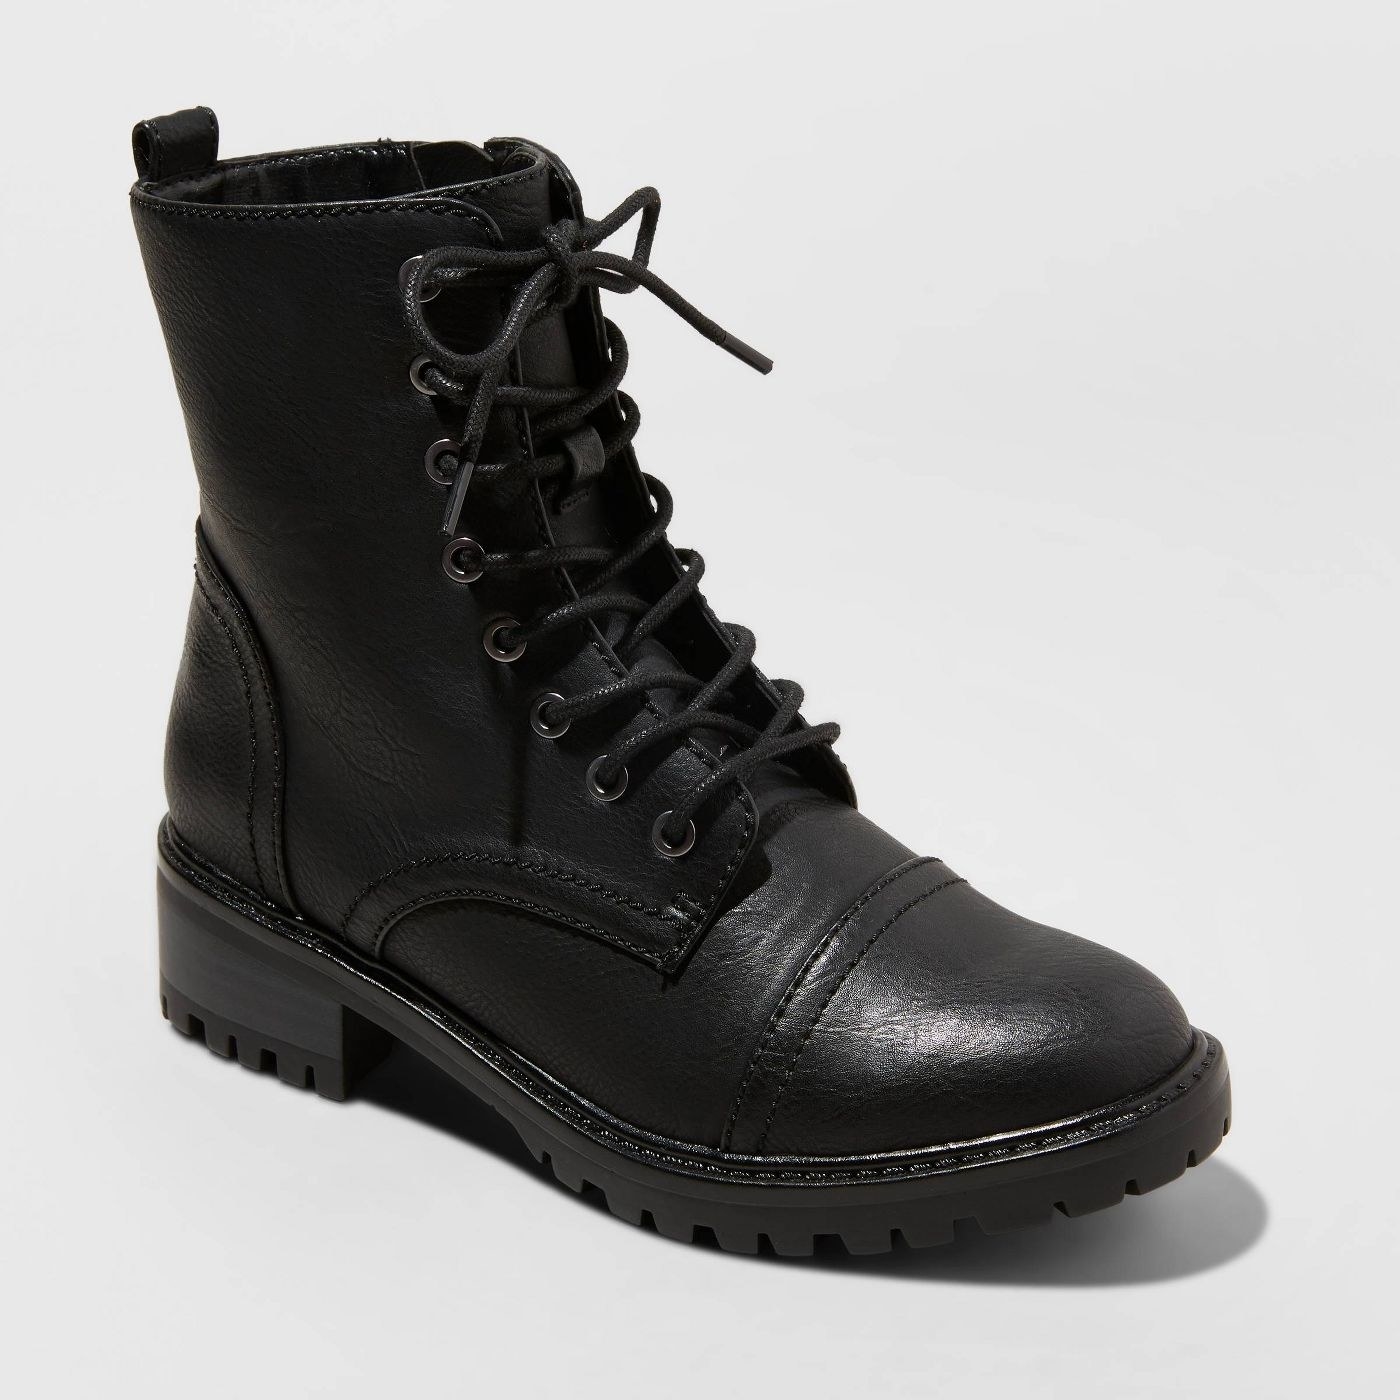 black combat boots